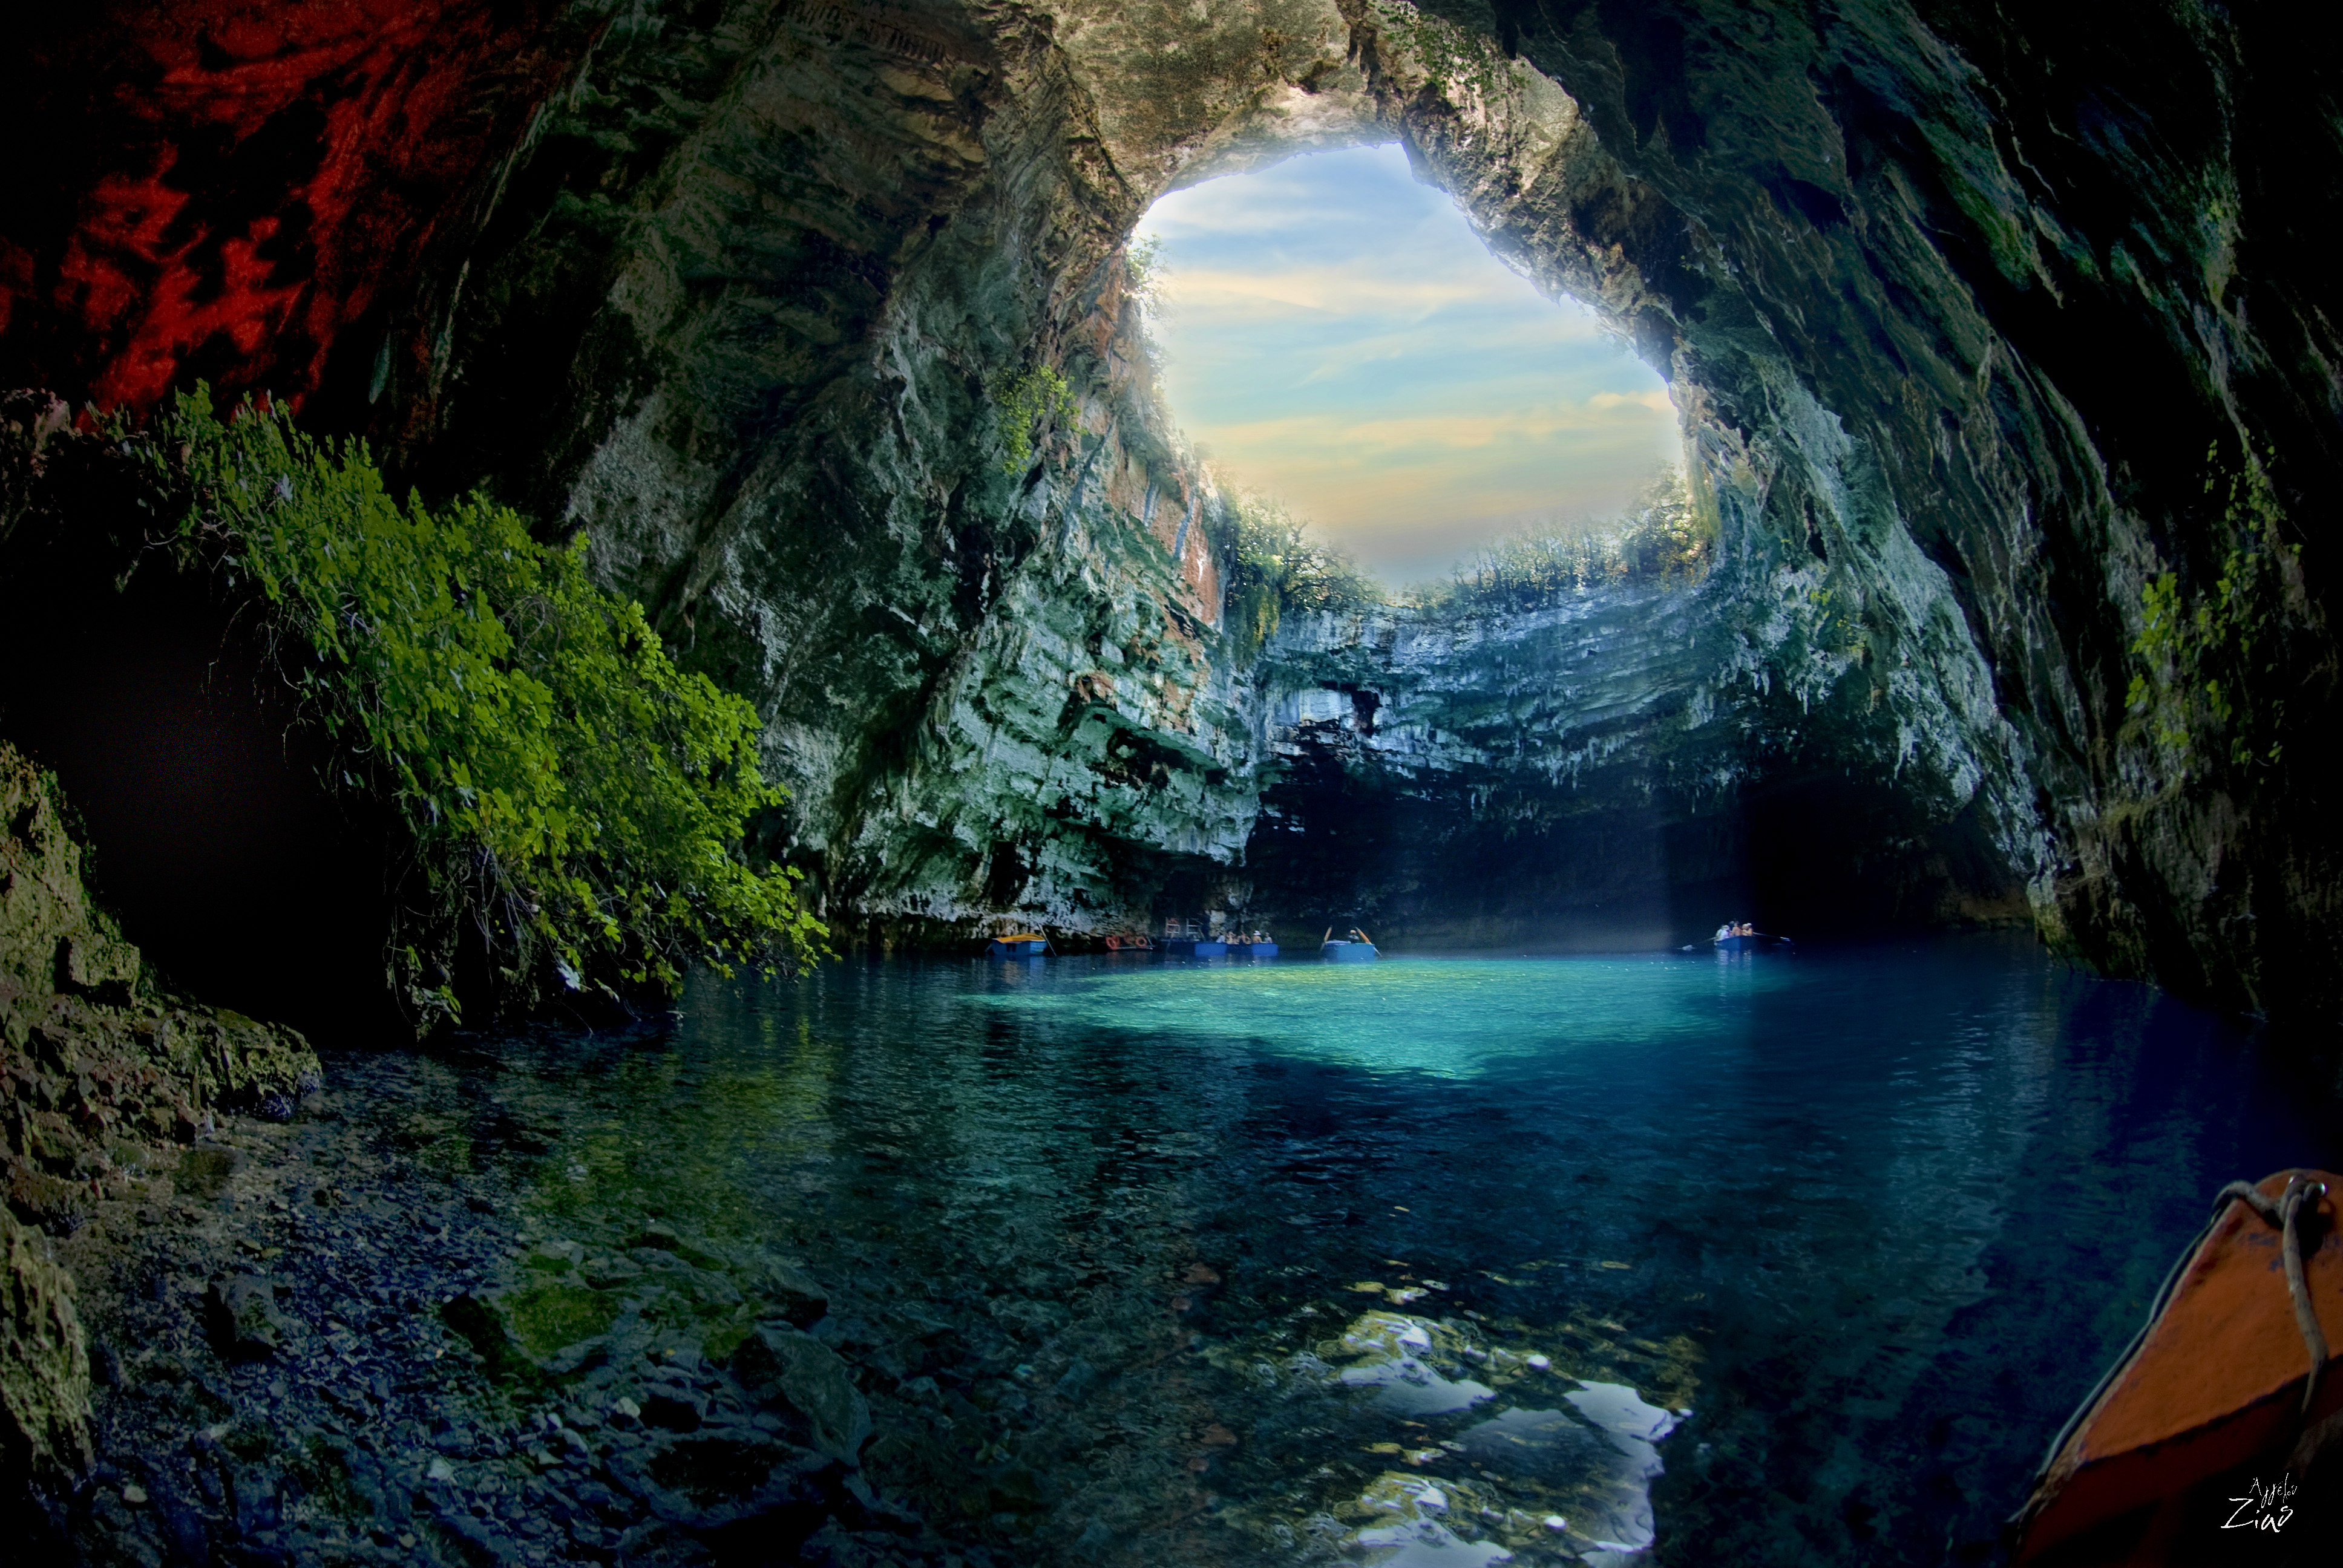 Места на планете. Пещера Мелиссани, Кефалония. Озеро Мелиссани в Греции. Пещерное озеро Мелиссани (остров Кефалония). Пещера Мелиссани, Кефалония, Греция.